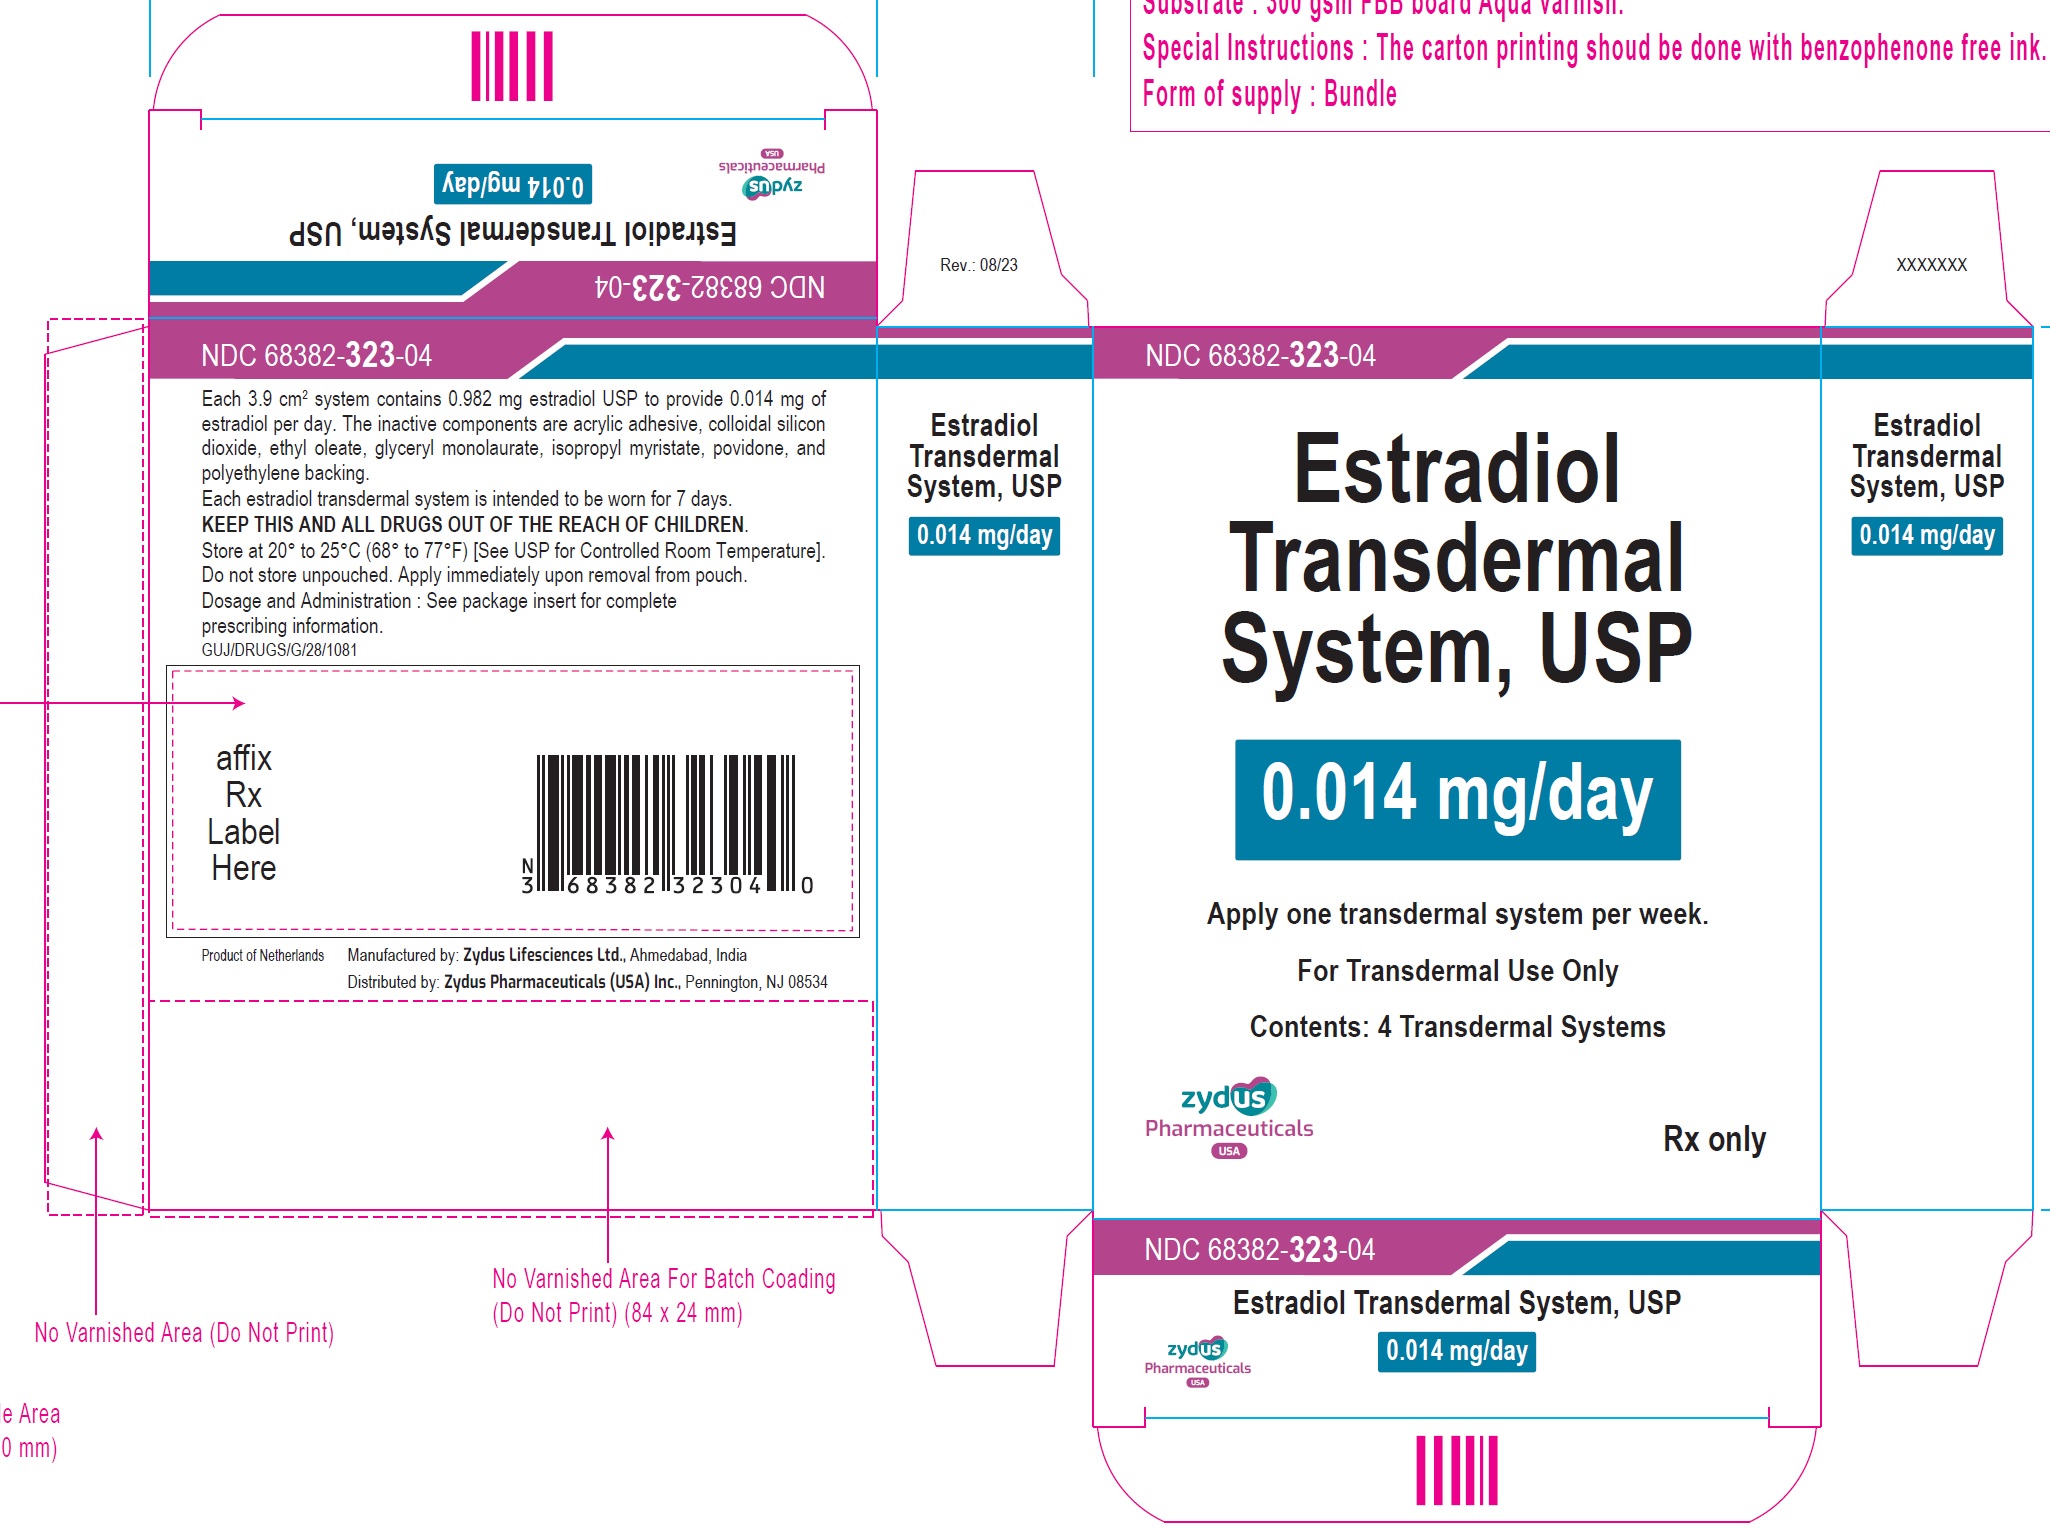 Estradiol Transdermal System, USP 0.014mg/day